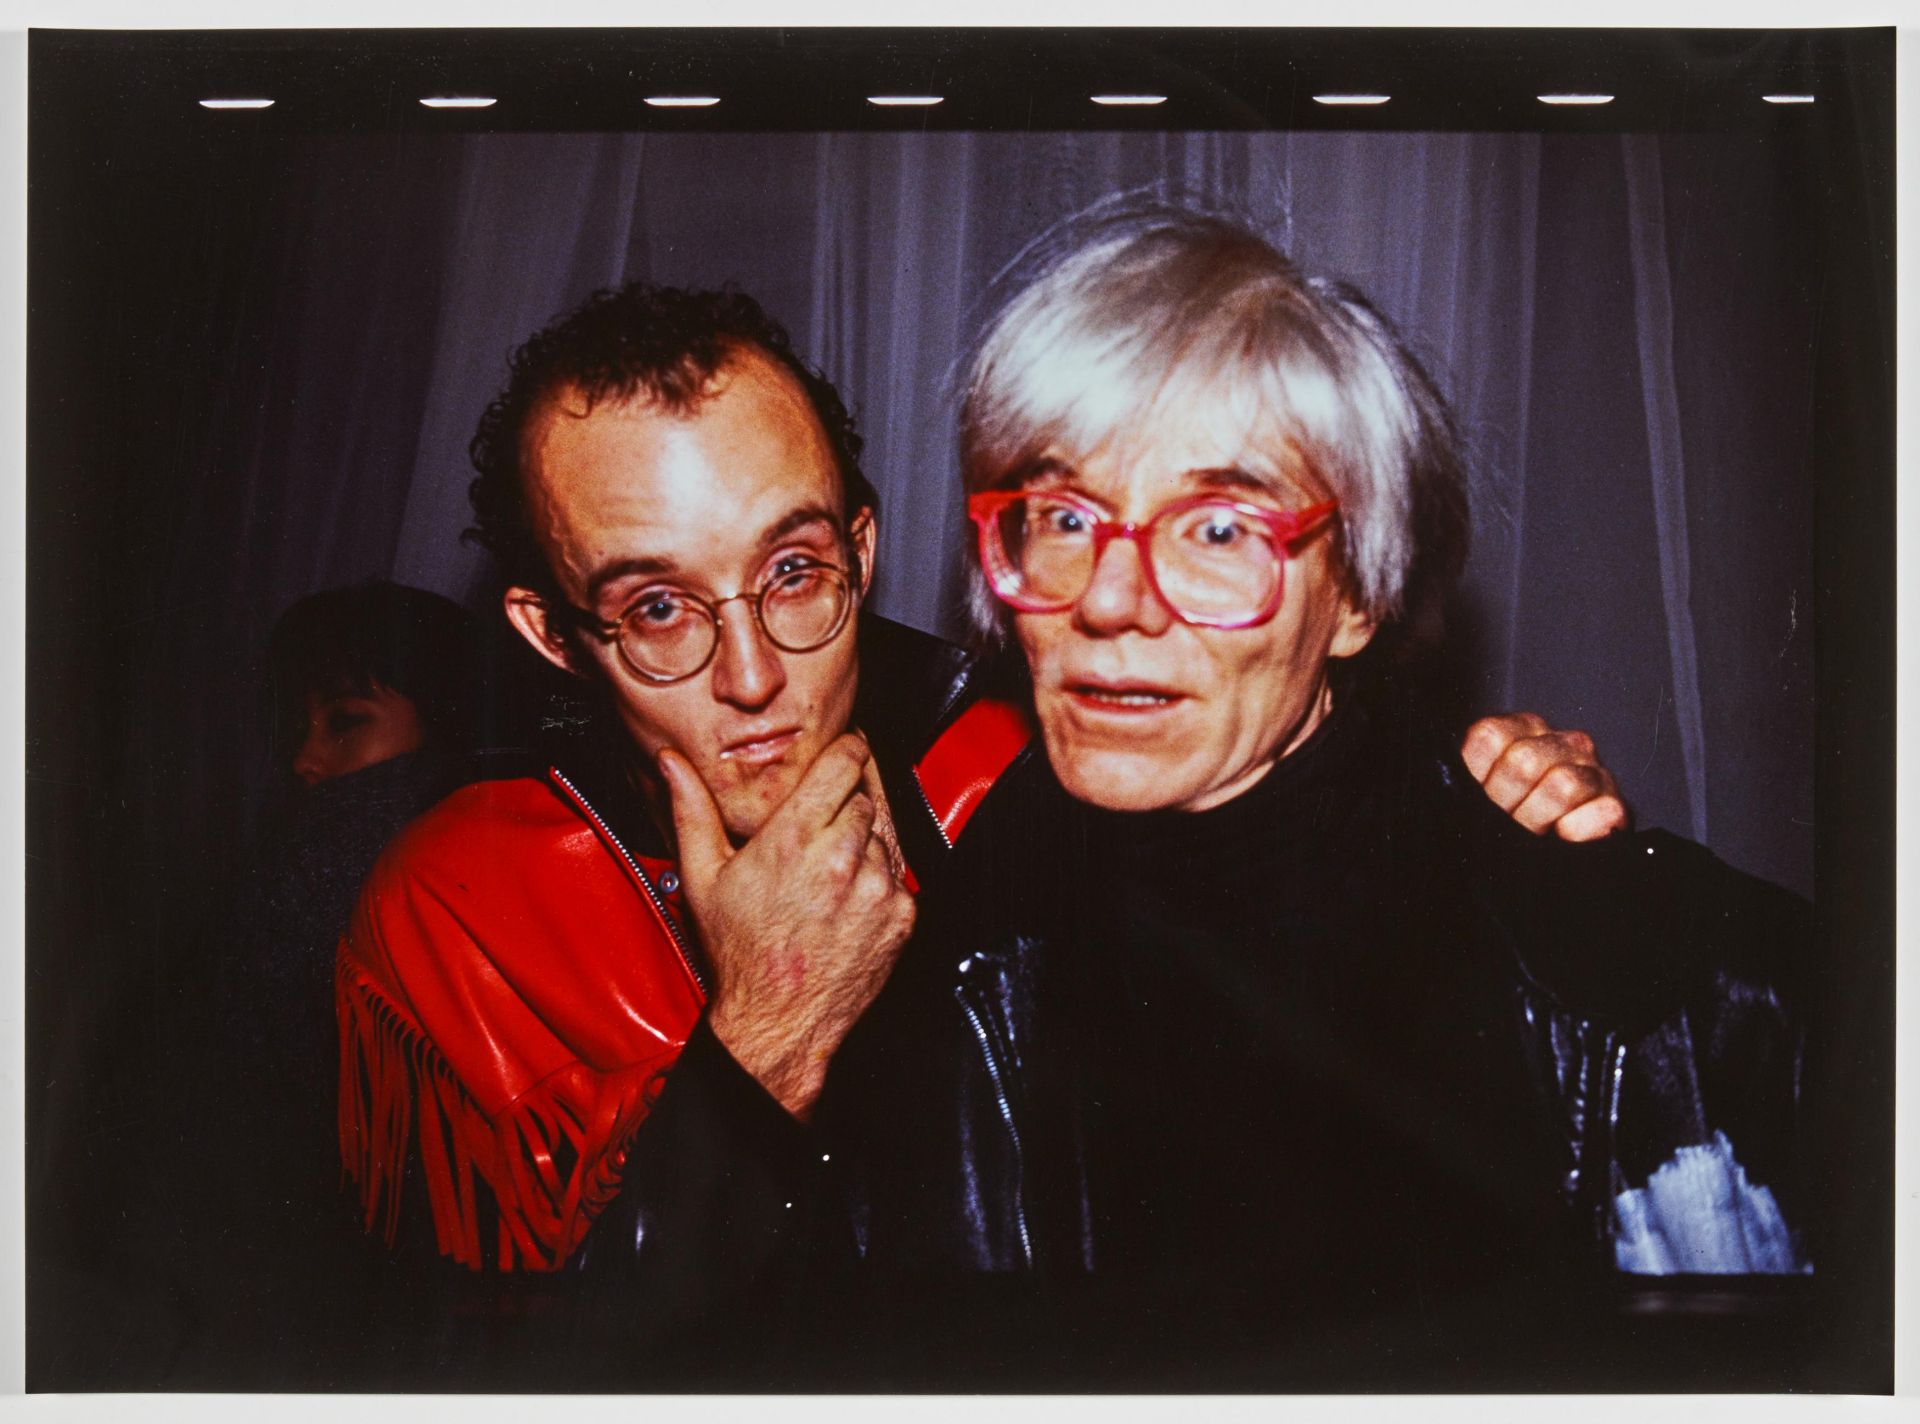 Nan Goldin: Andy Warhol and Keith Haring at Palladium N.Y - Image 2 of 4